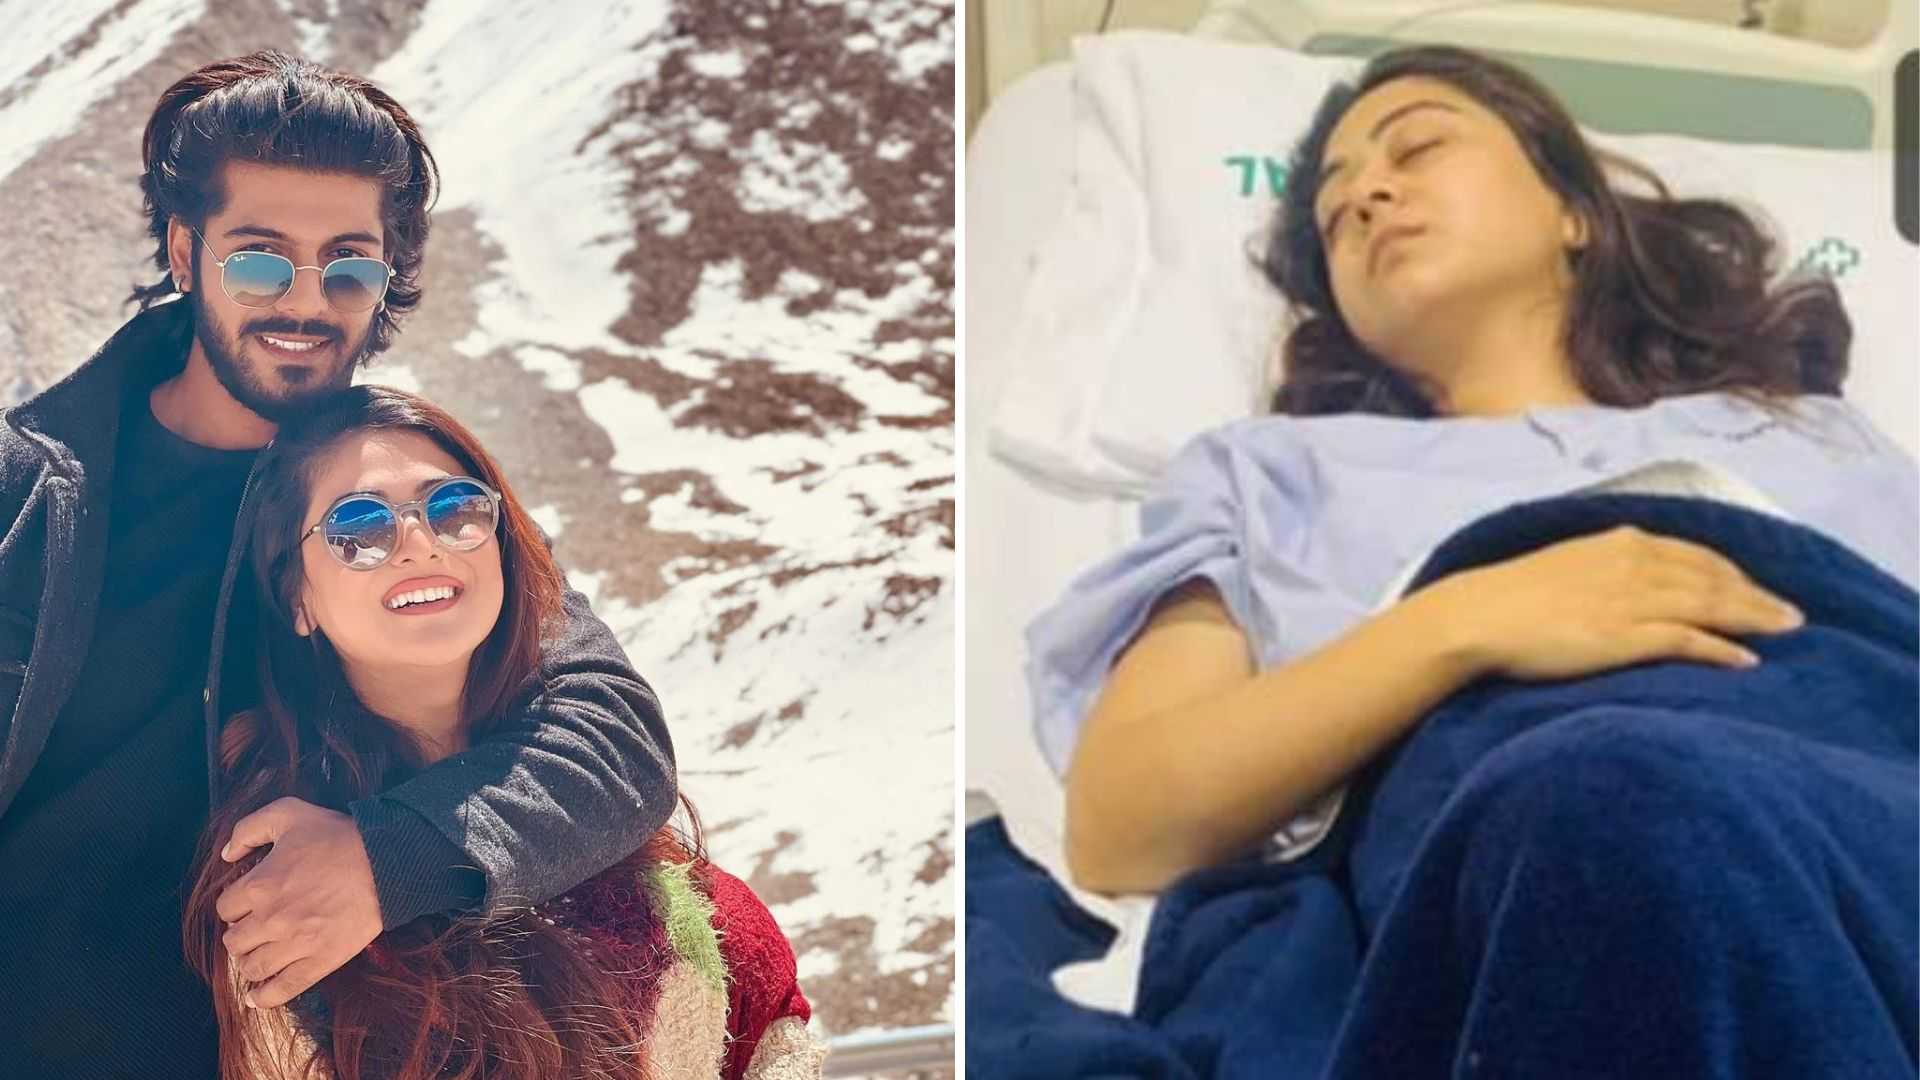 शीजान खान की बहन फलक नाज की बिगड़ी हालत, अस्पताल में भर्ती होते ही फटा मां का कलेजा